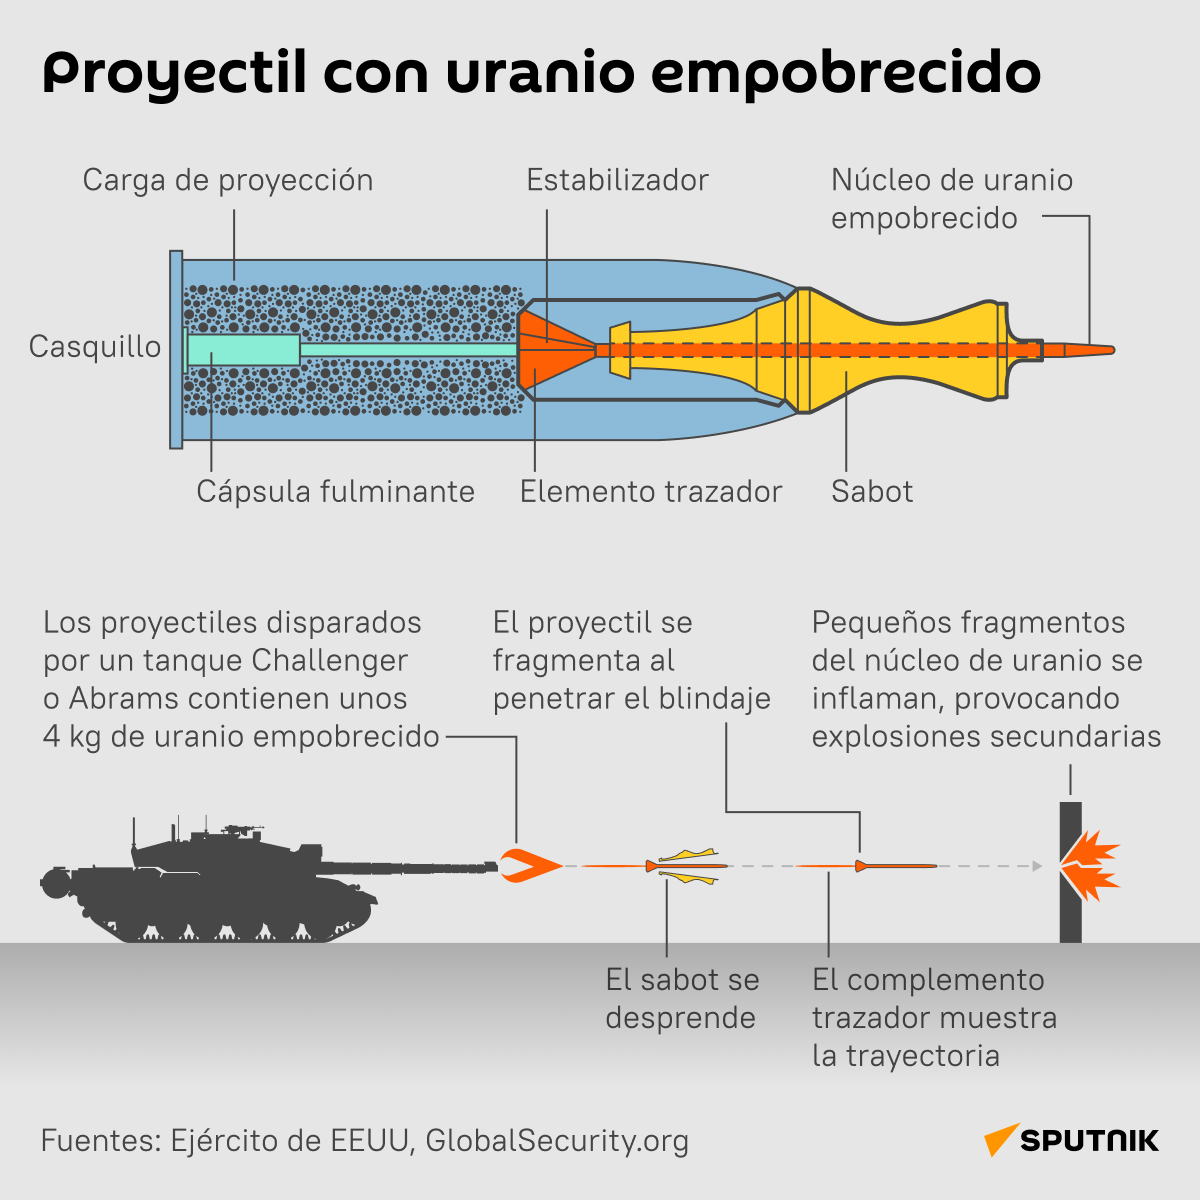 Proyectil de uranio empobrecido - Sputnik Mundo